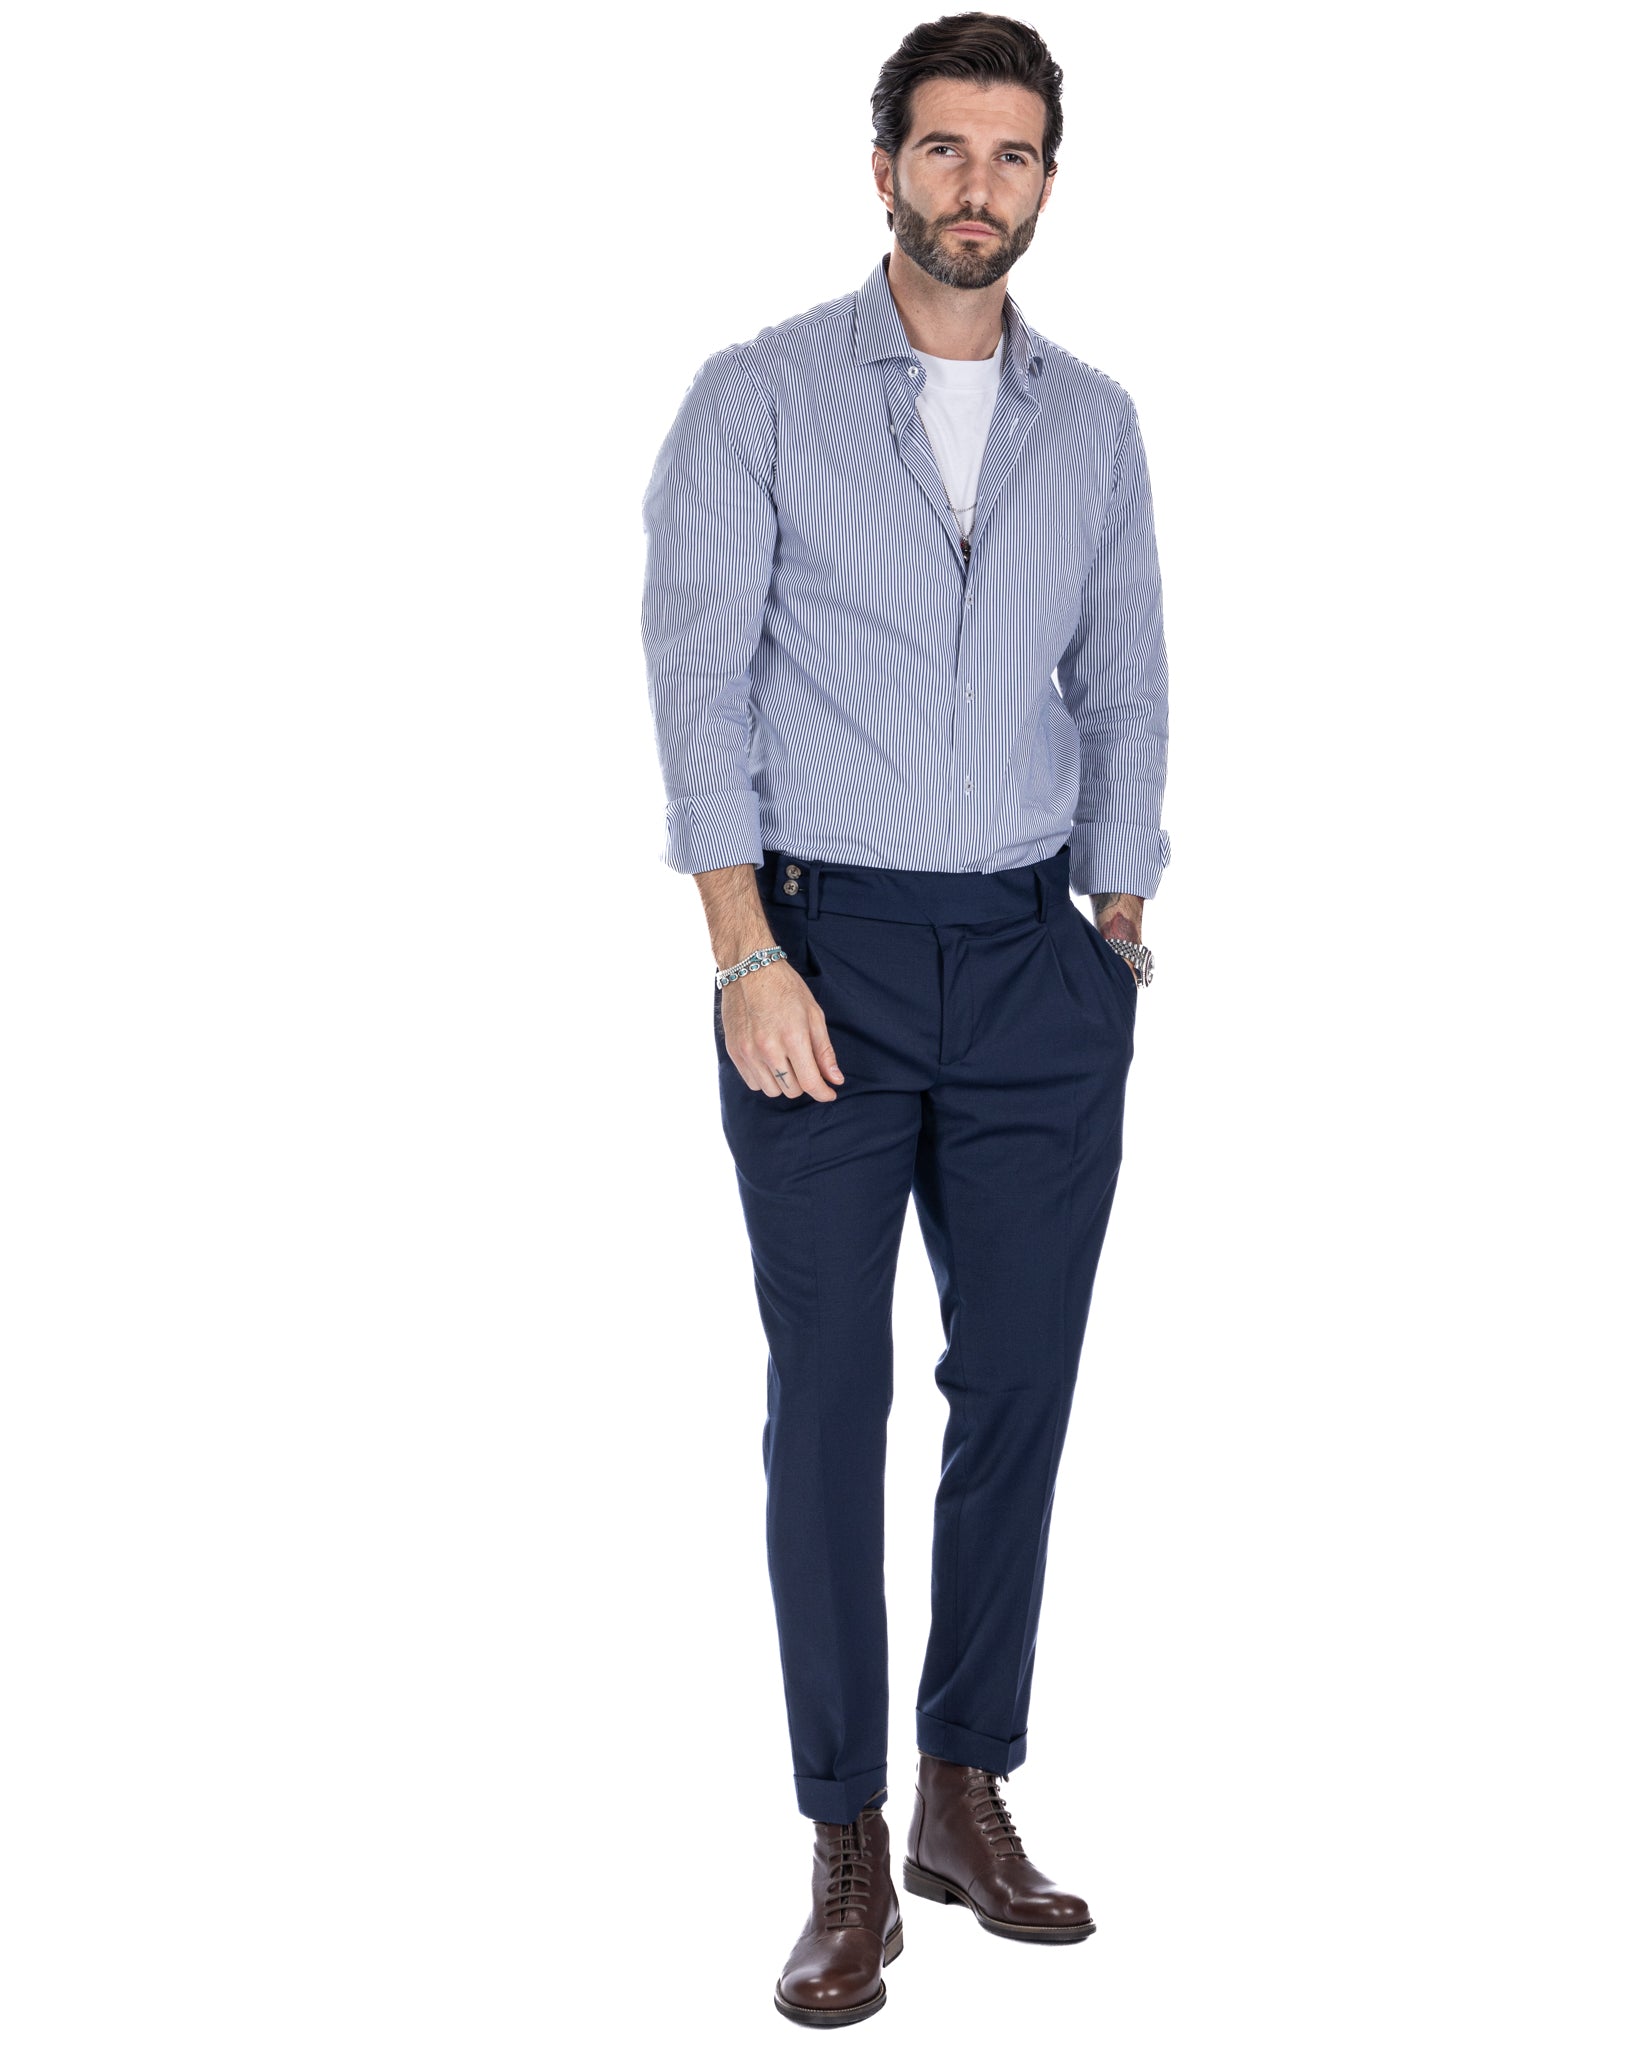 Pantalon italien taille haute bleu en laine mélangée